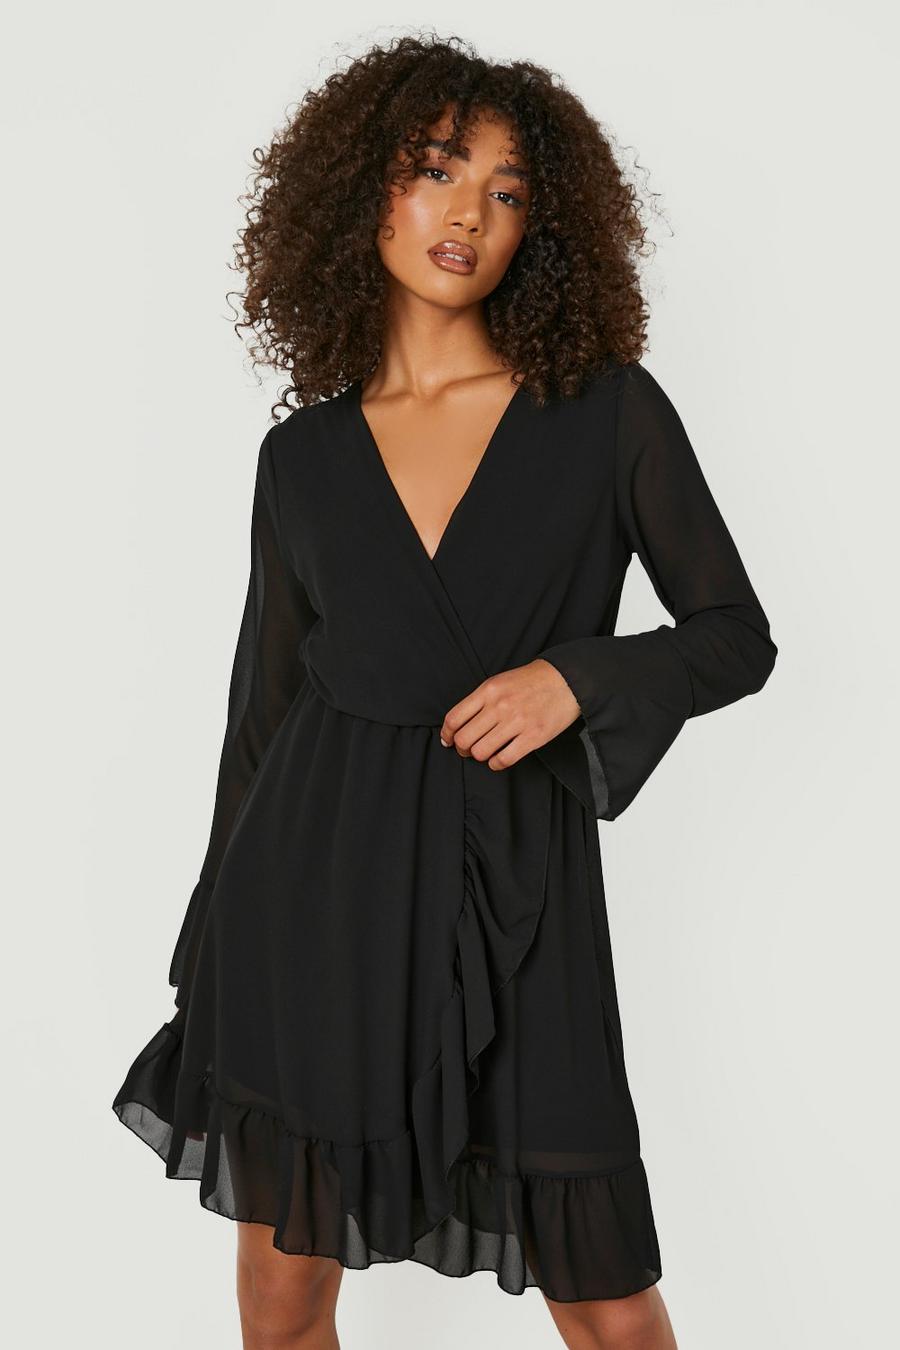 שחור nero שמלת סקייטר עם שרוולים מתרחבים לנשים גבוהות